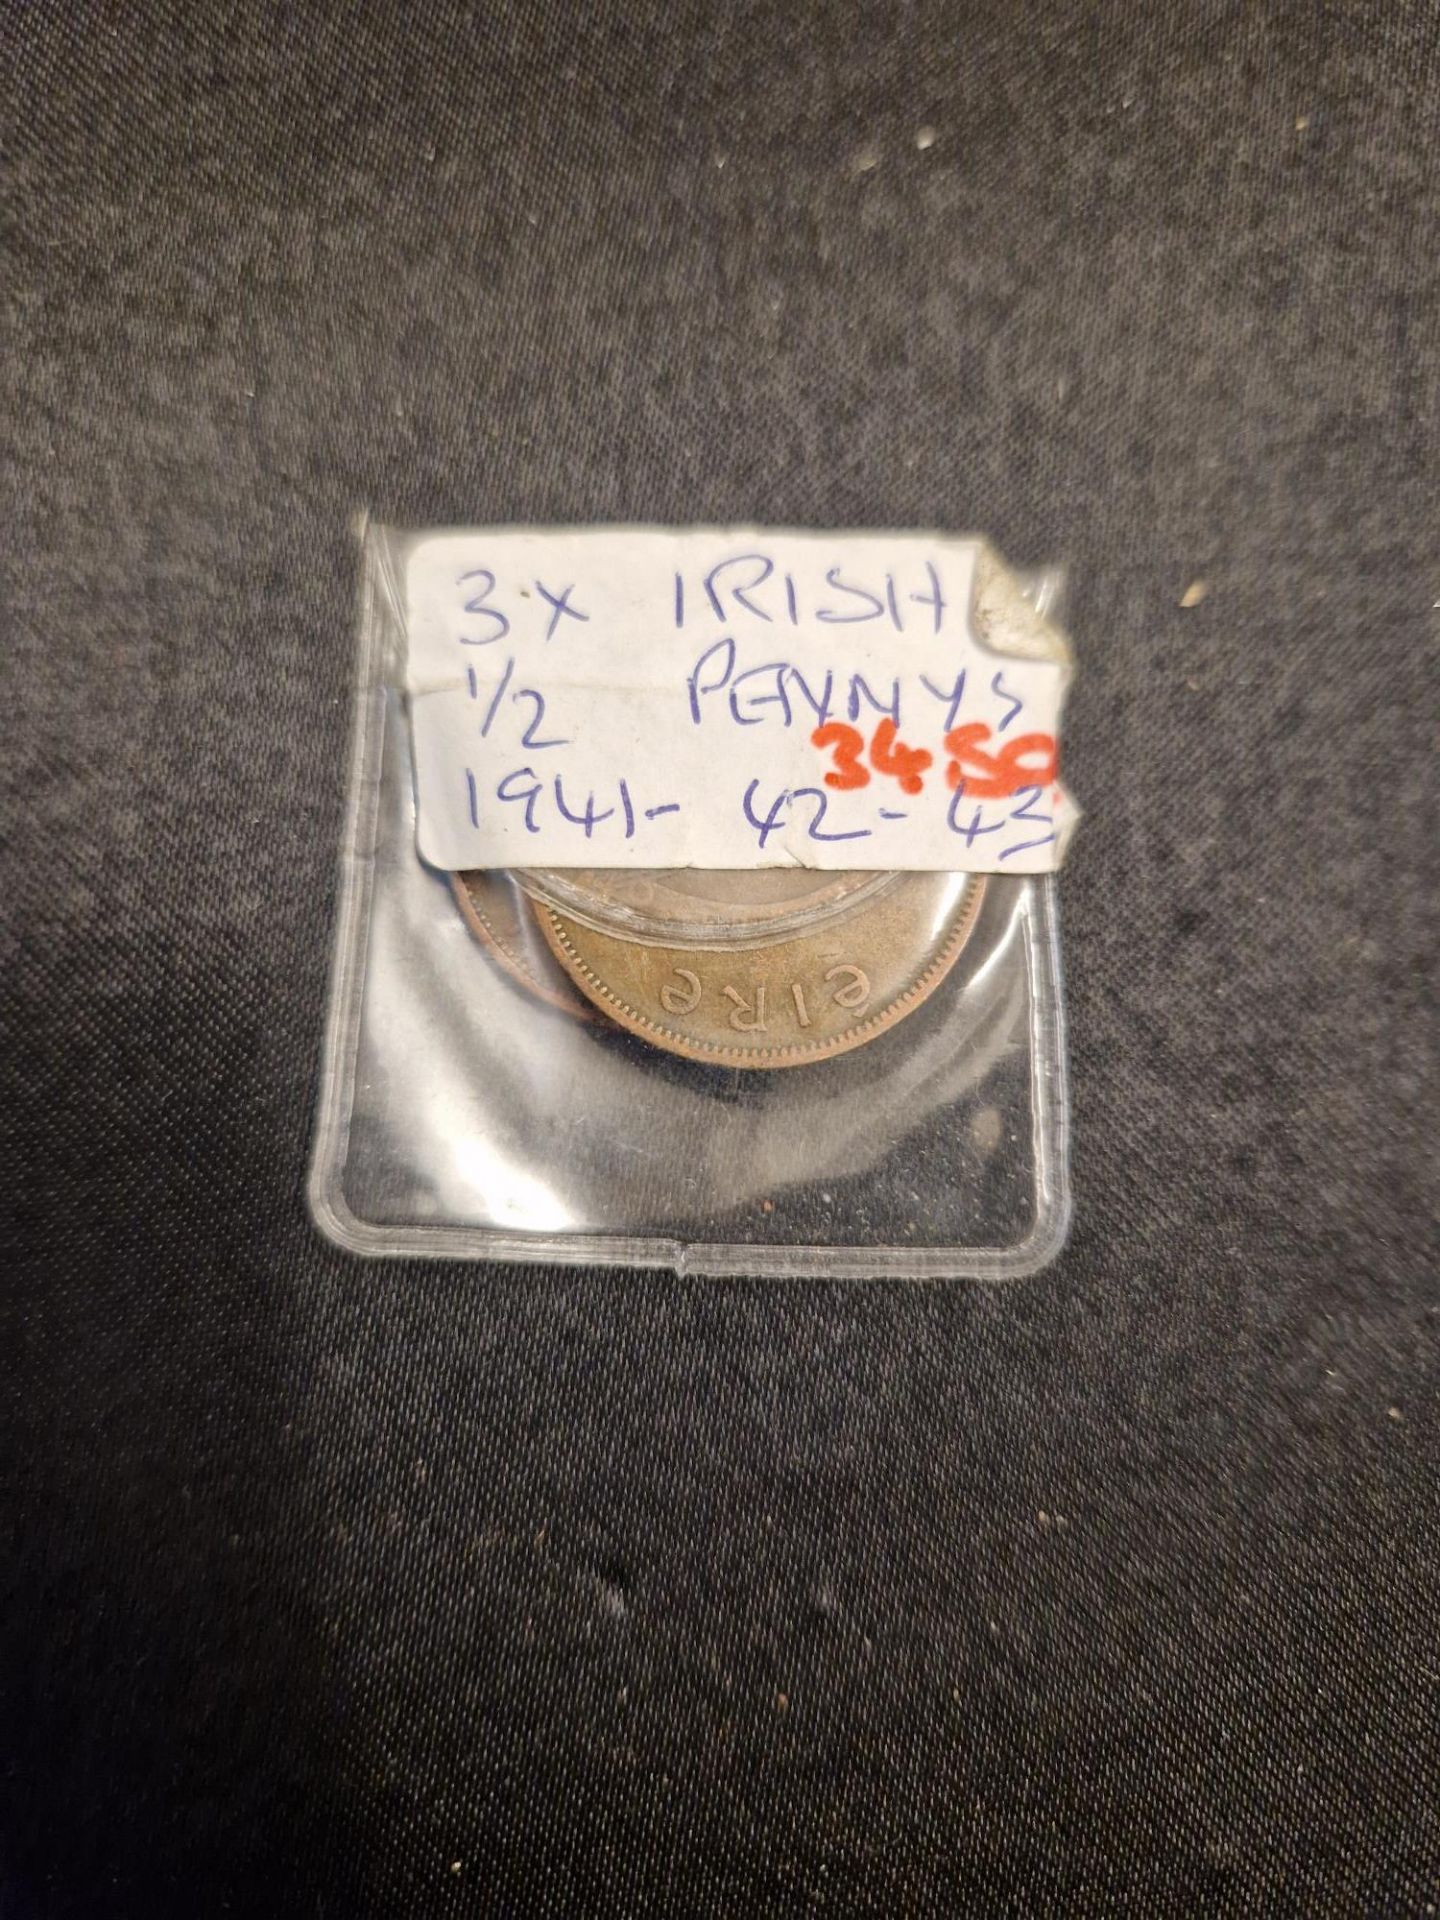 3x irish 1/2 pennys 1941 - 42 - 43